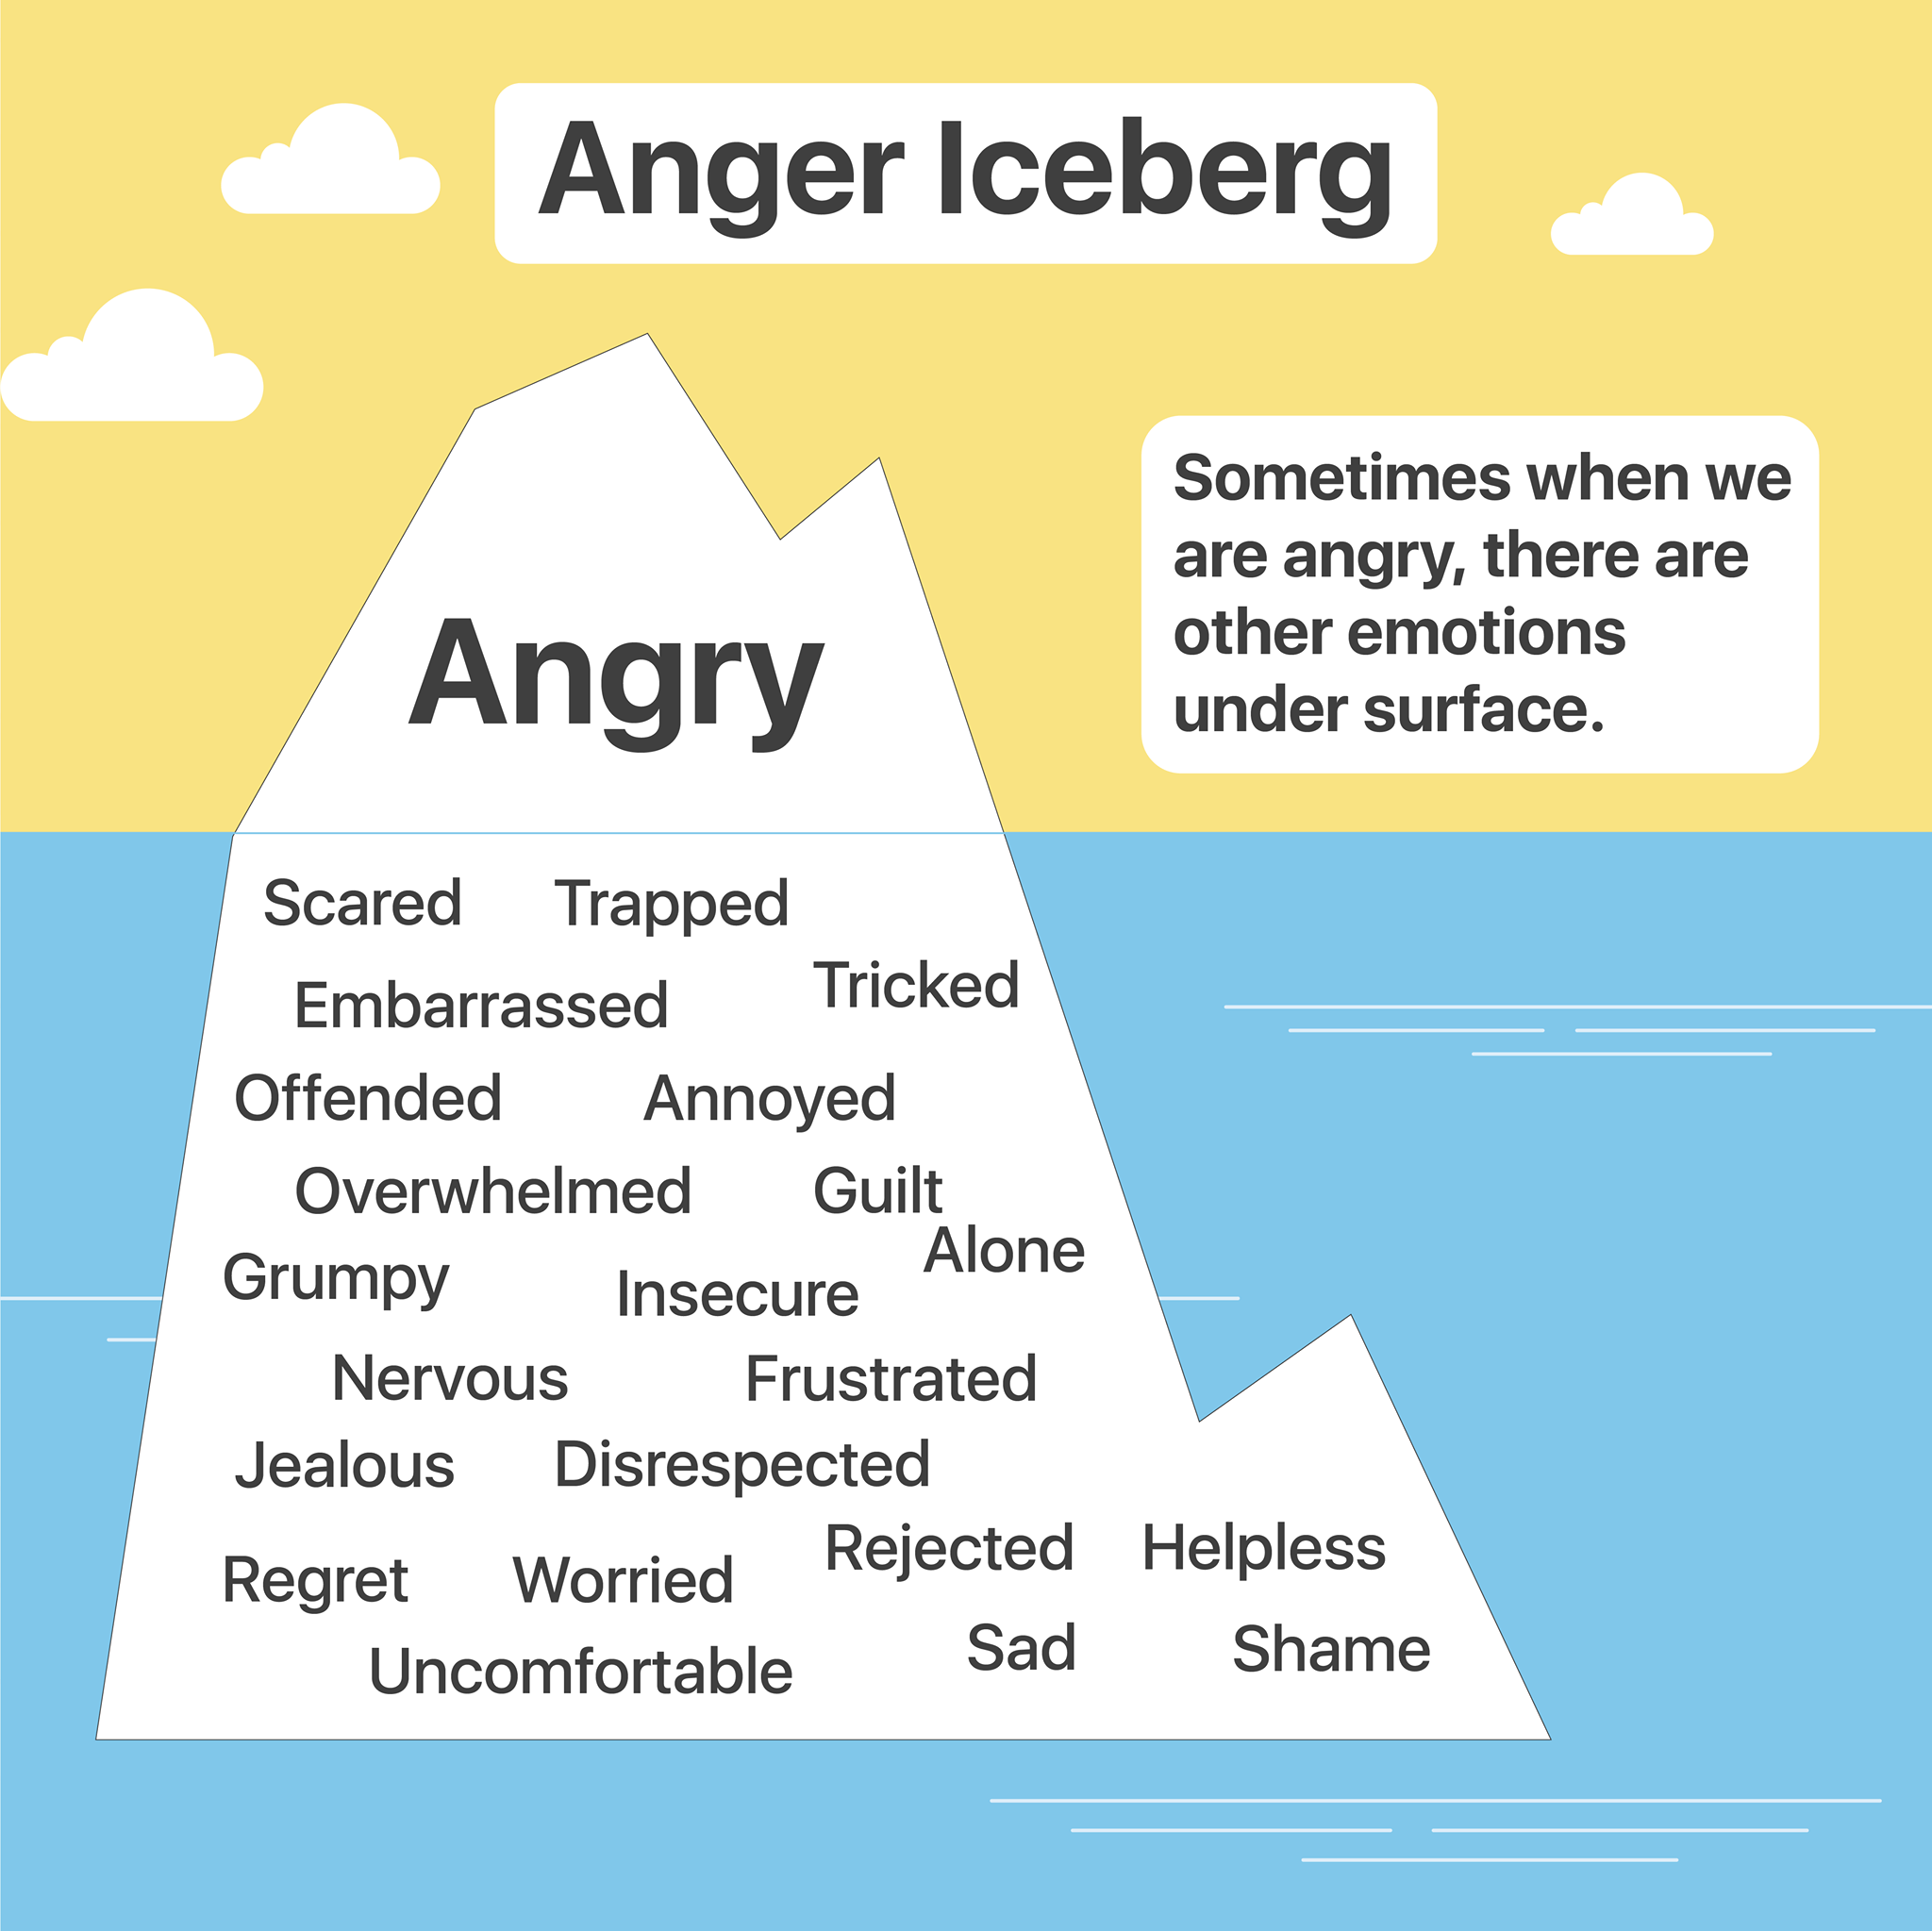 explain anger iceberg emotions